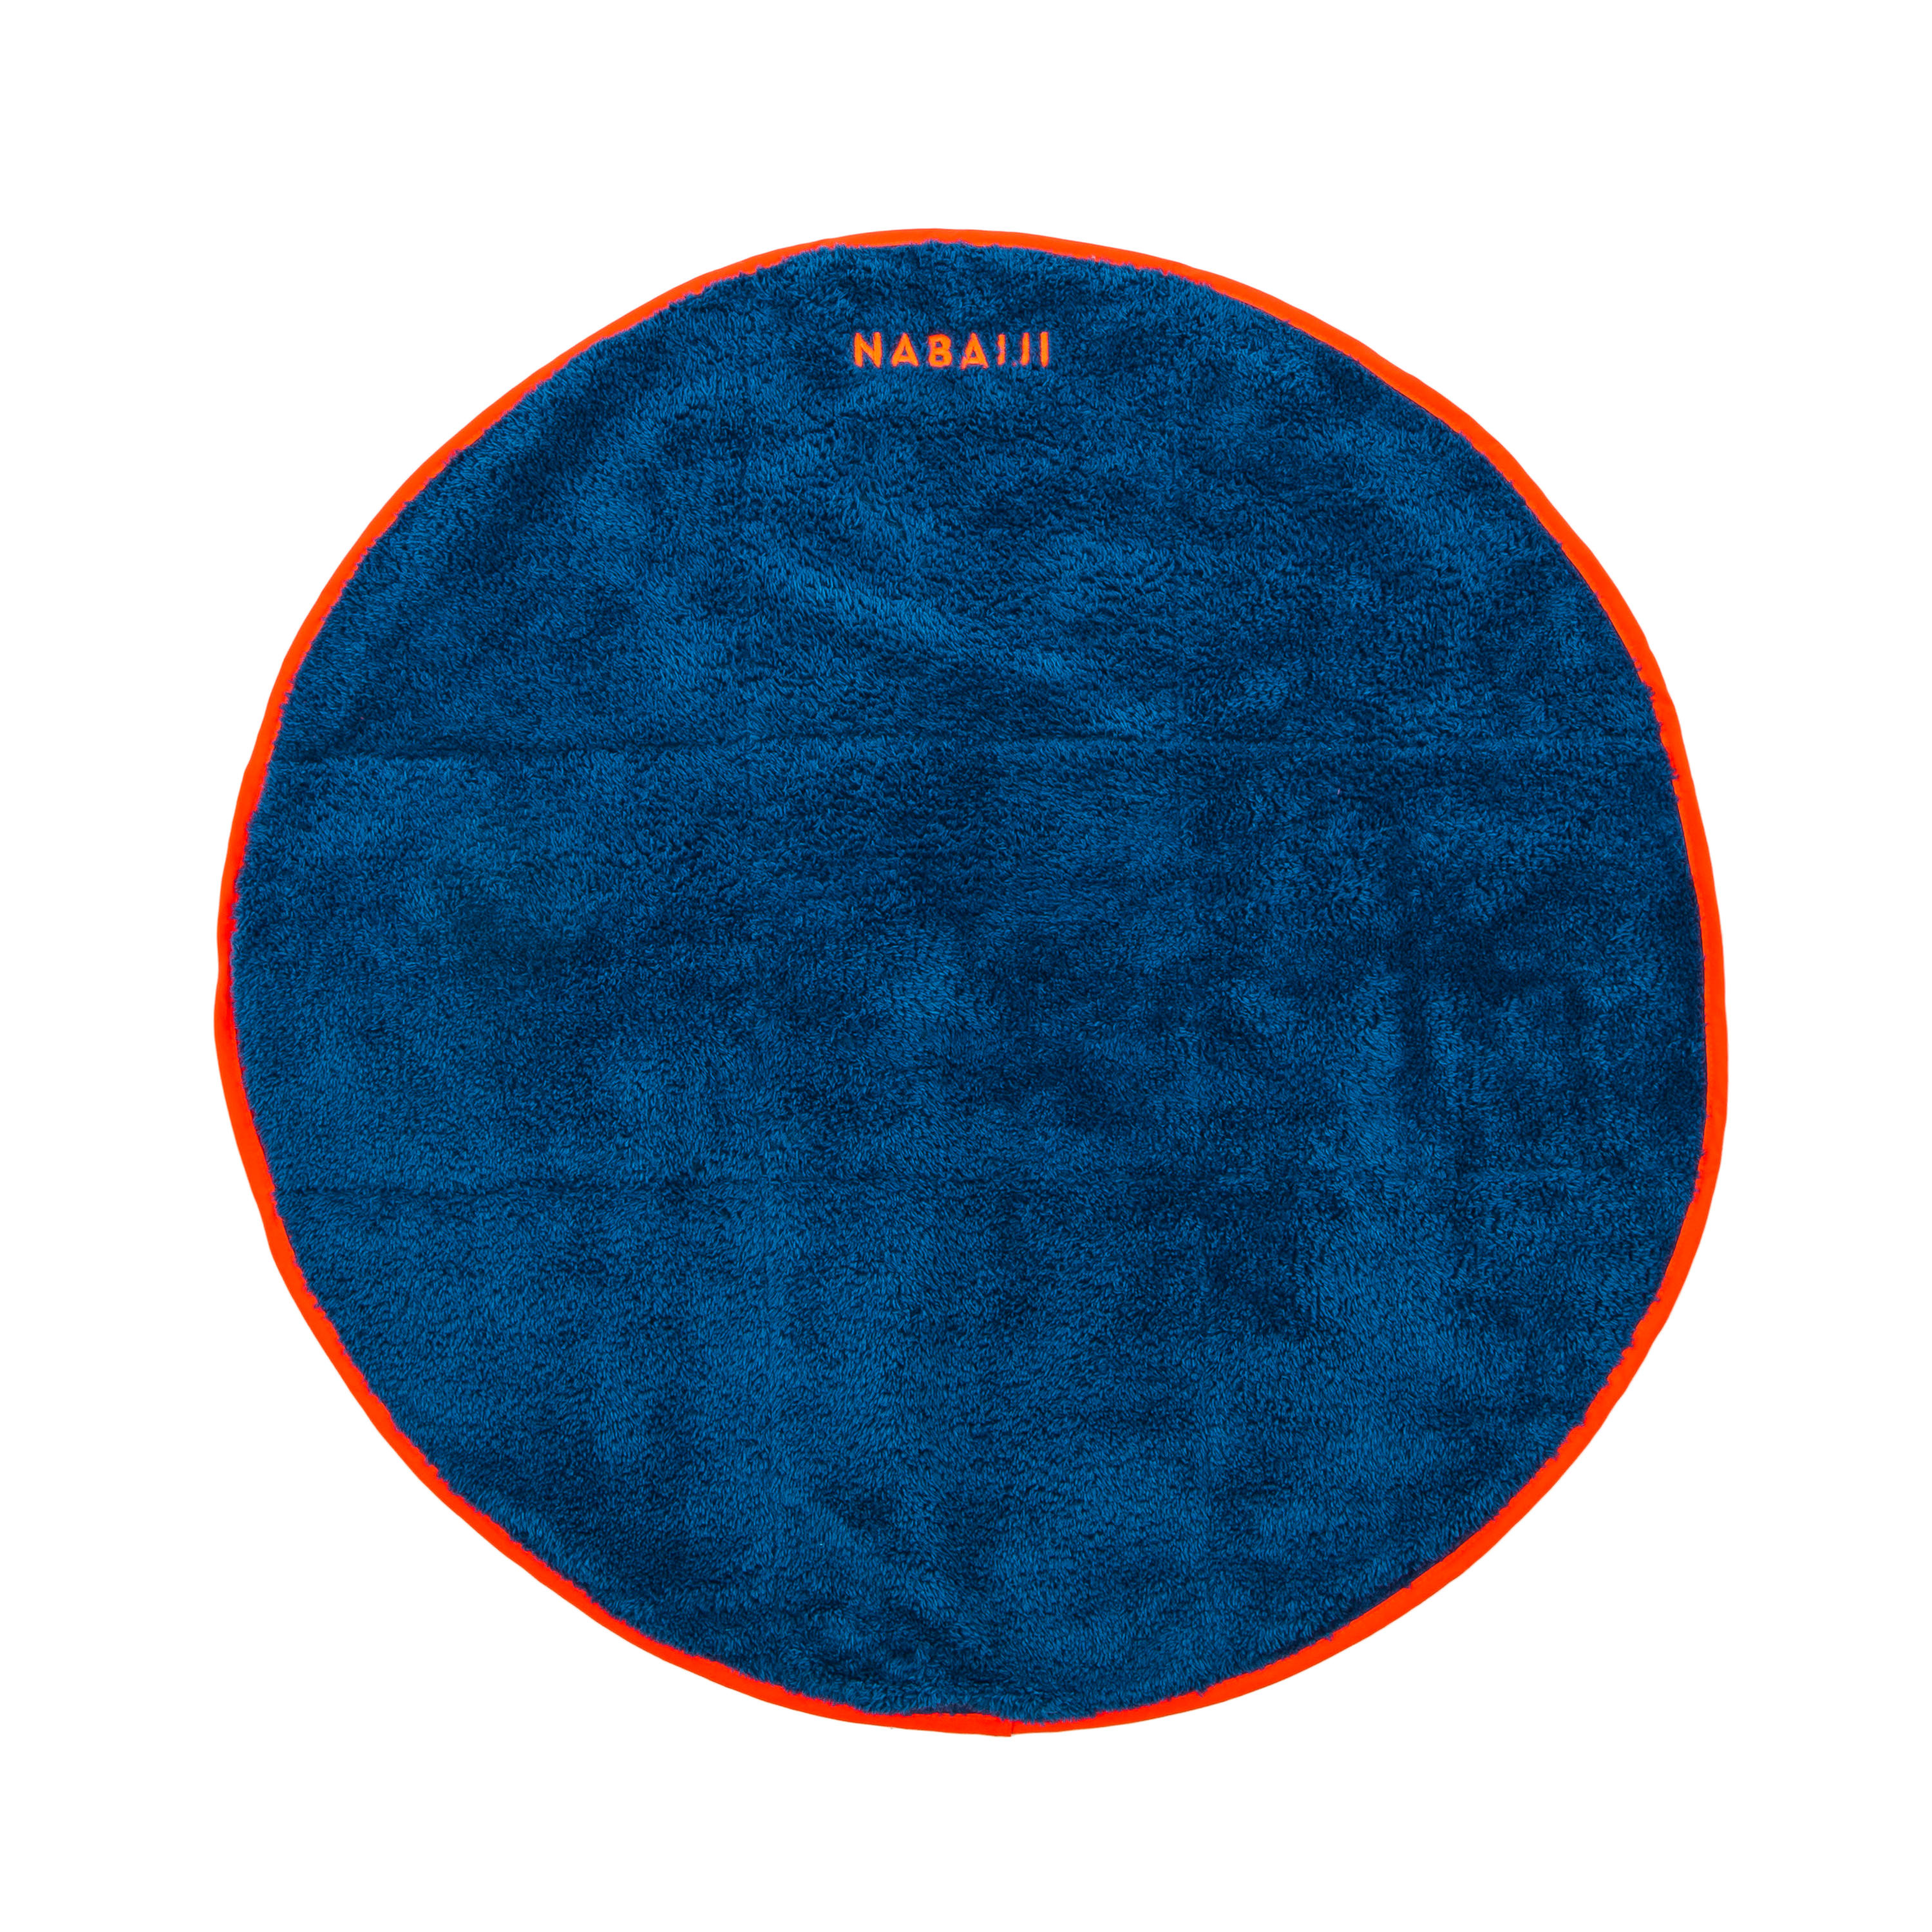 NABAIJI Two-Face Microfibre Foot Towel - Dark blue, 60 cm Diameter